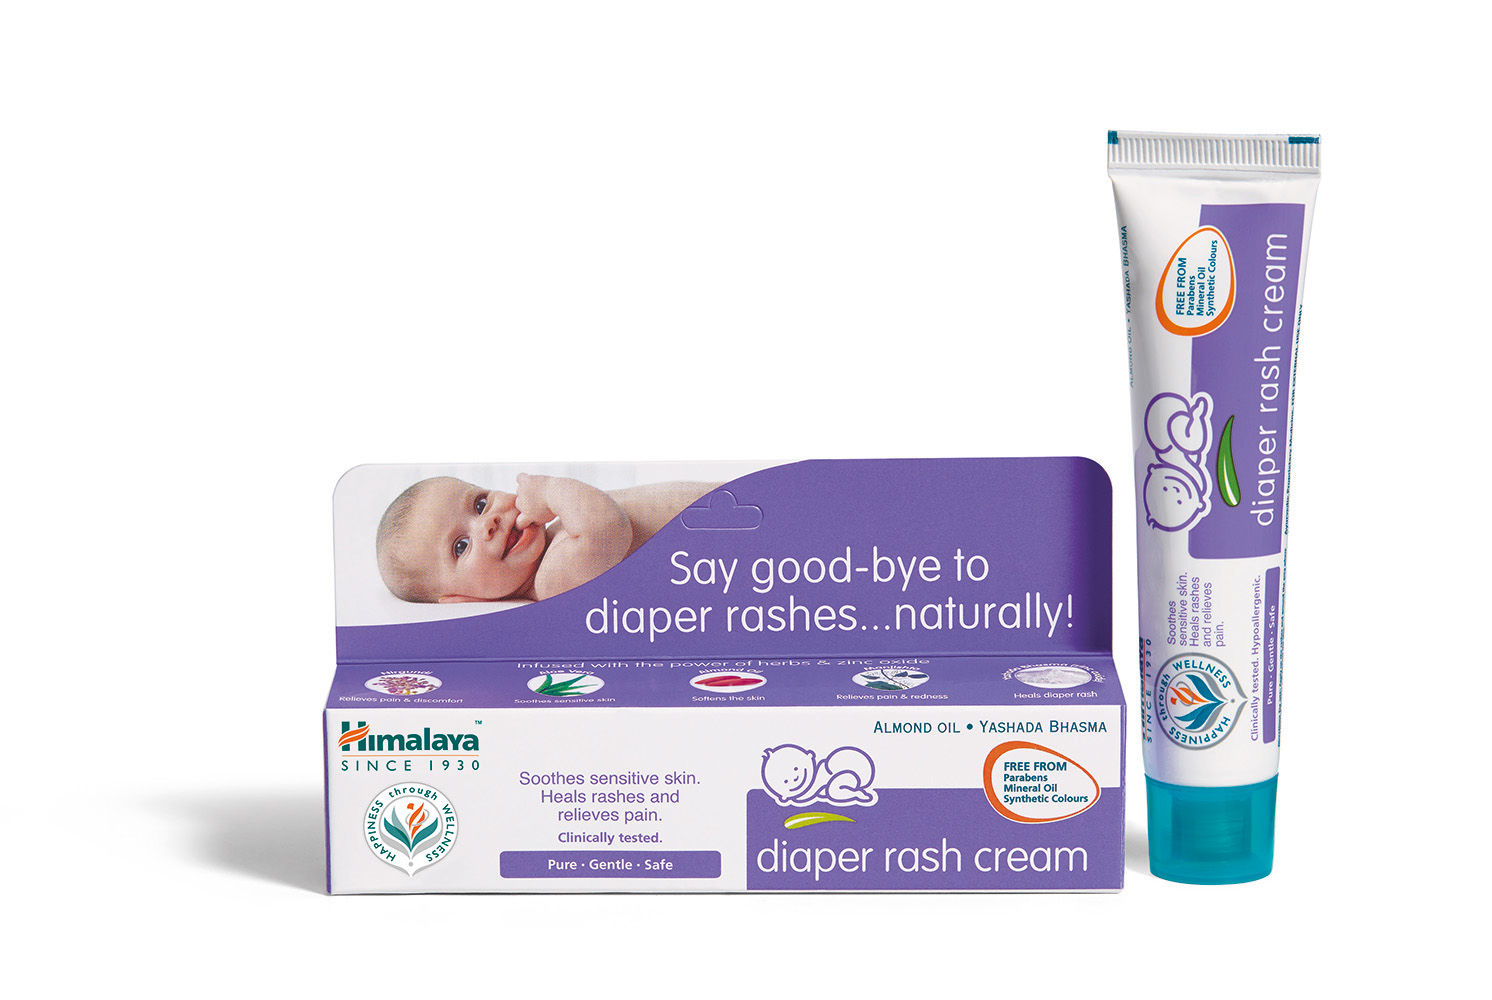 baby diaper rash cream